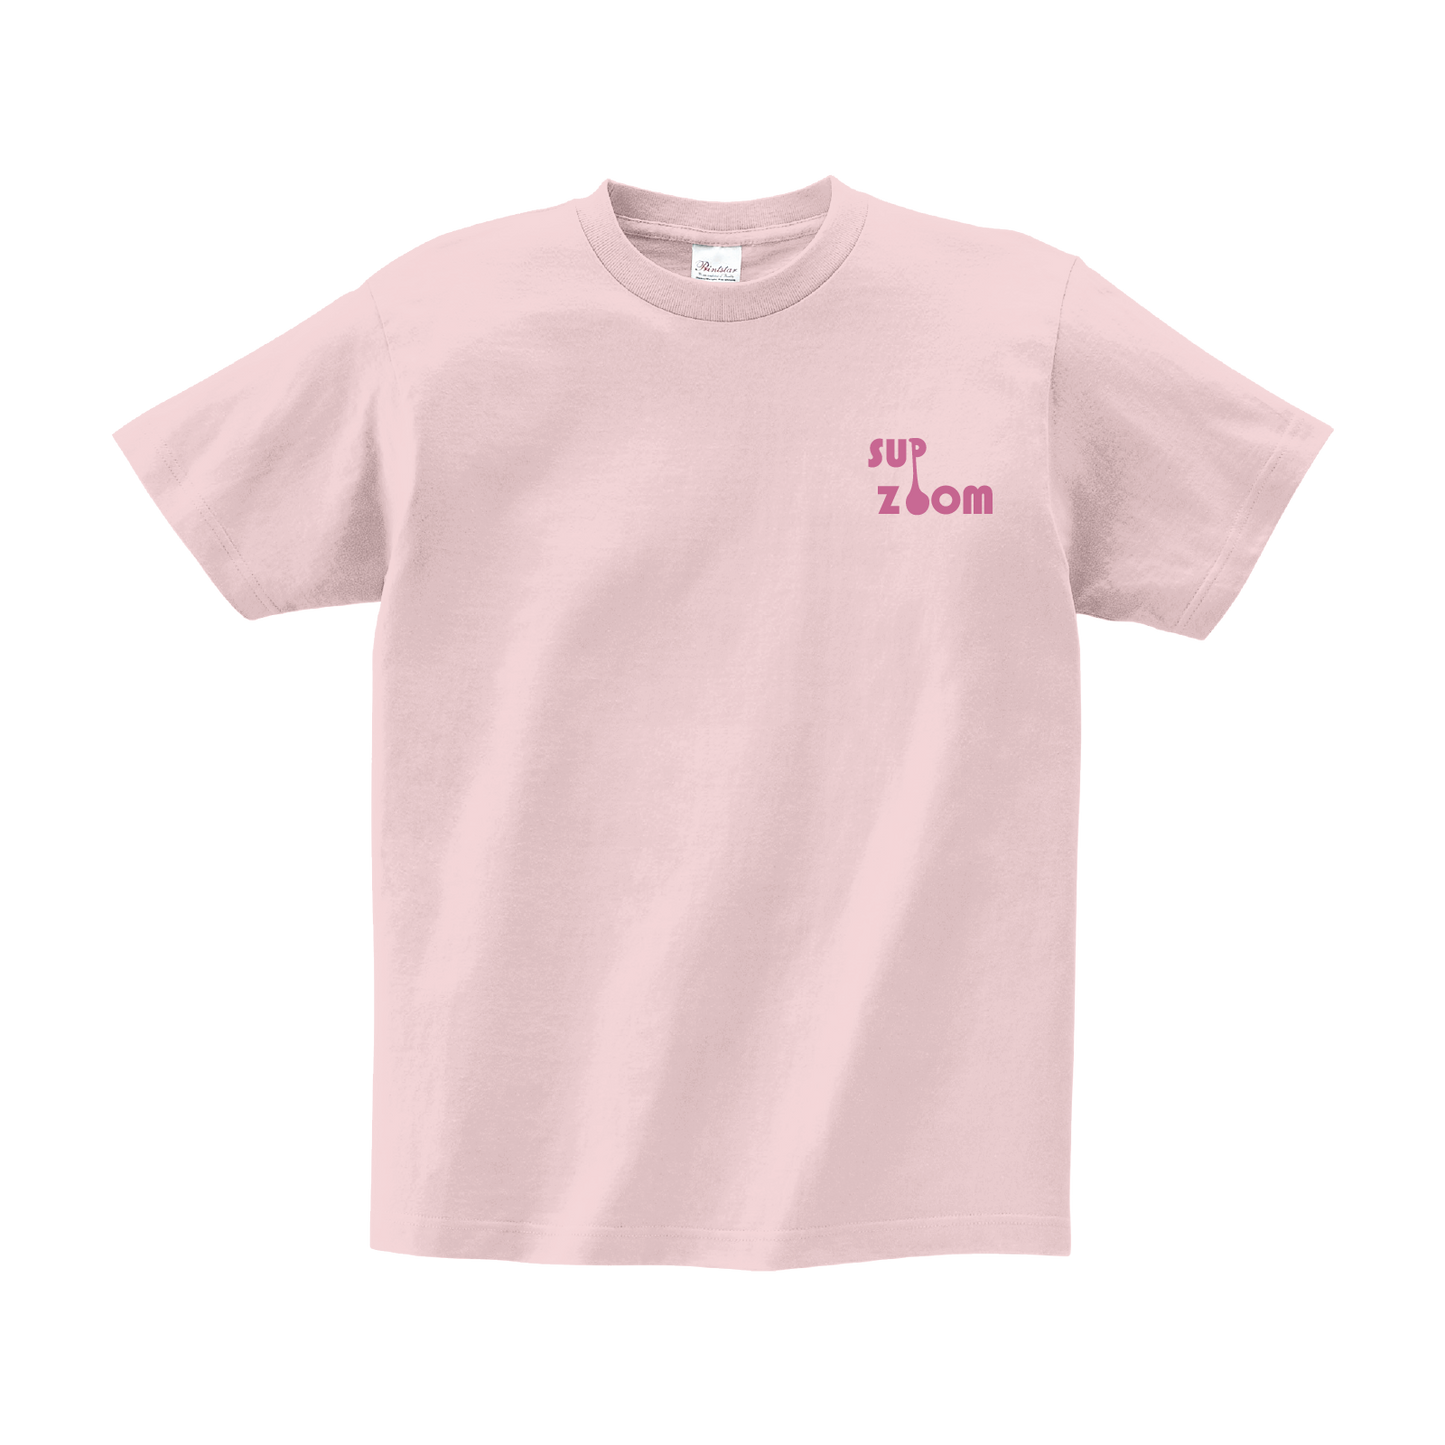 Lt.Pink_Tshirt